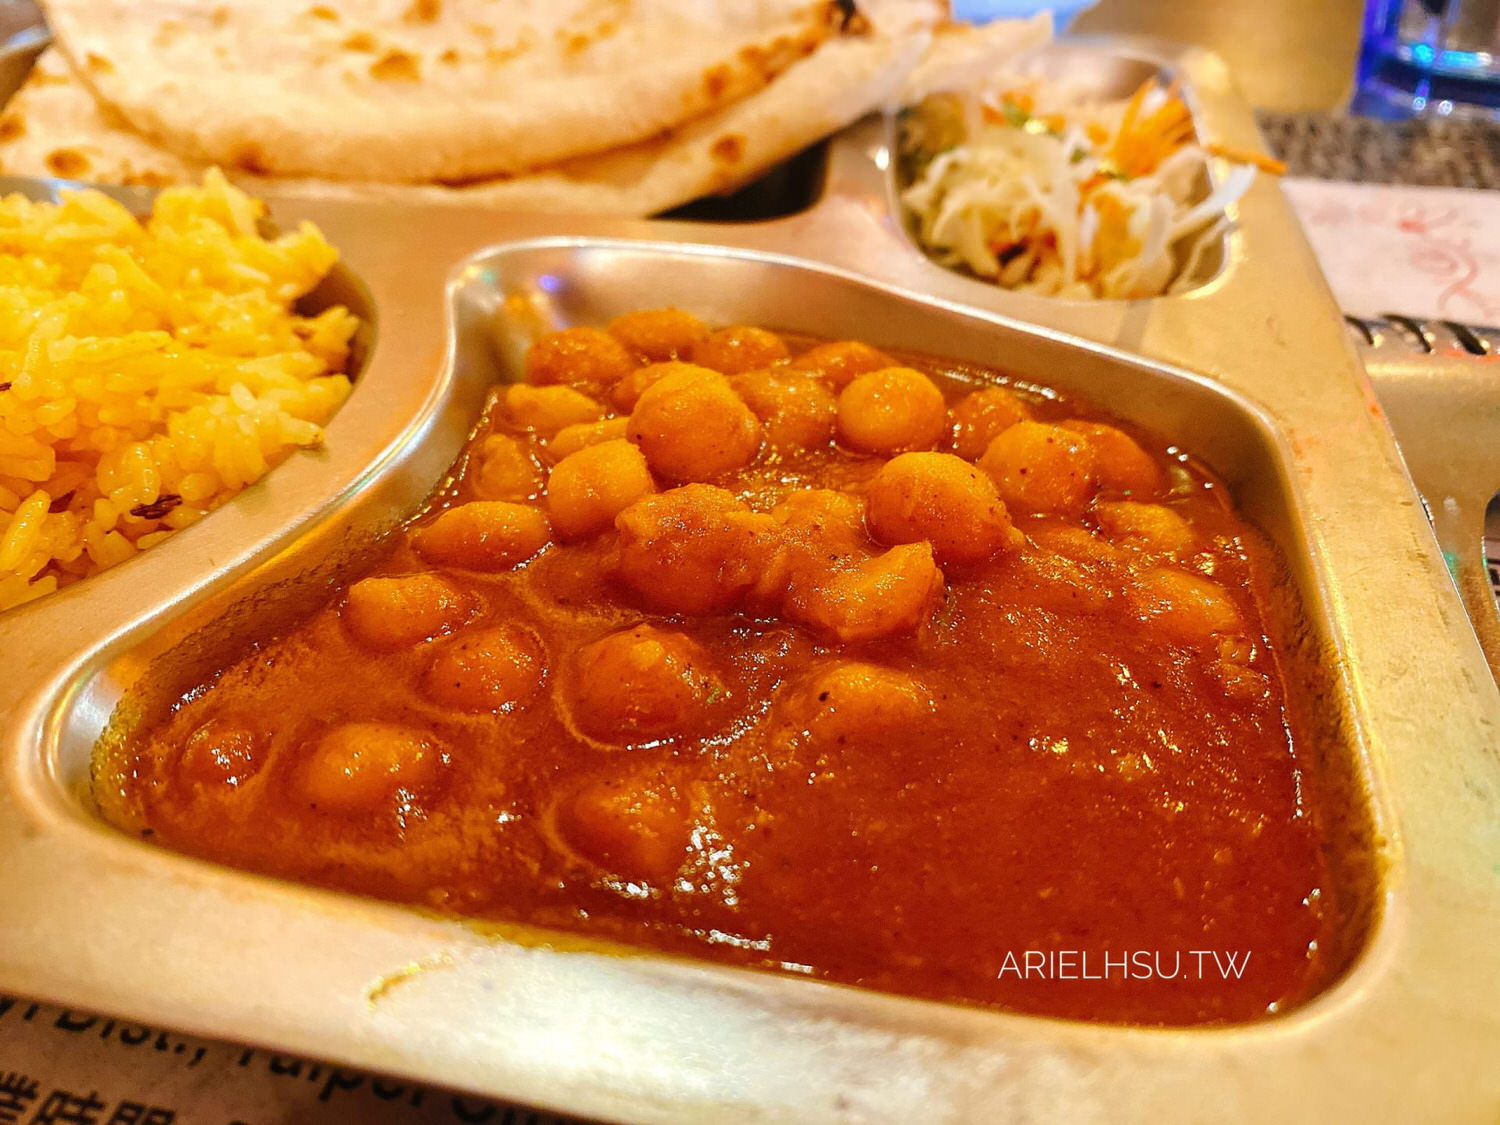 【食記】台北信義美食《饗印印度料理》台北印度餐廳推薦、少年Pi的奇幻漂流飲食指導：道地美味印度咖哩令人回味、巴基斯坦餐廳、清真認證、素食、穆斯林餐廳 Khana Khazana Indian Restaurant MR-033